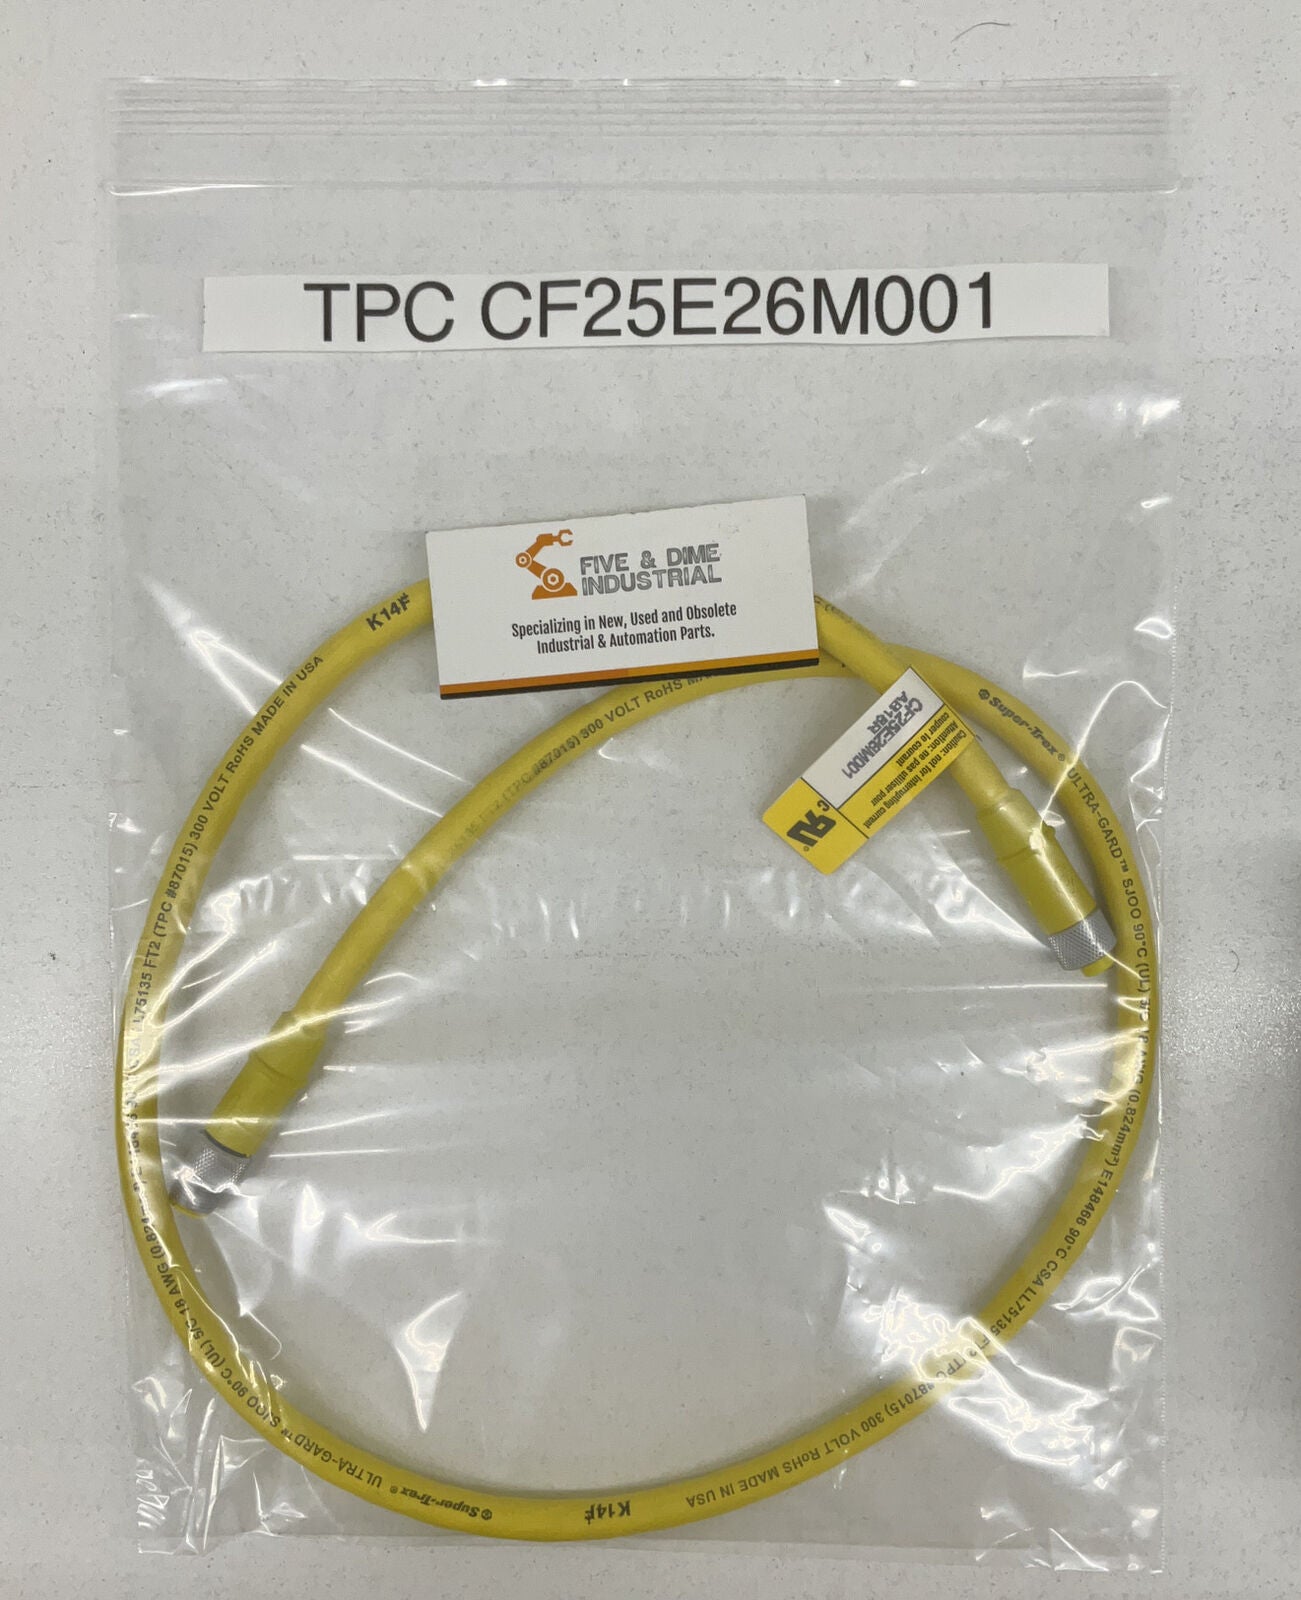 TPC CF25E26M001 SJ100 MICRO QUICK CONNECT CABLE 1M   (CBL121)